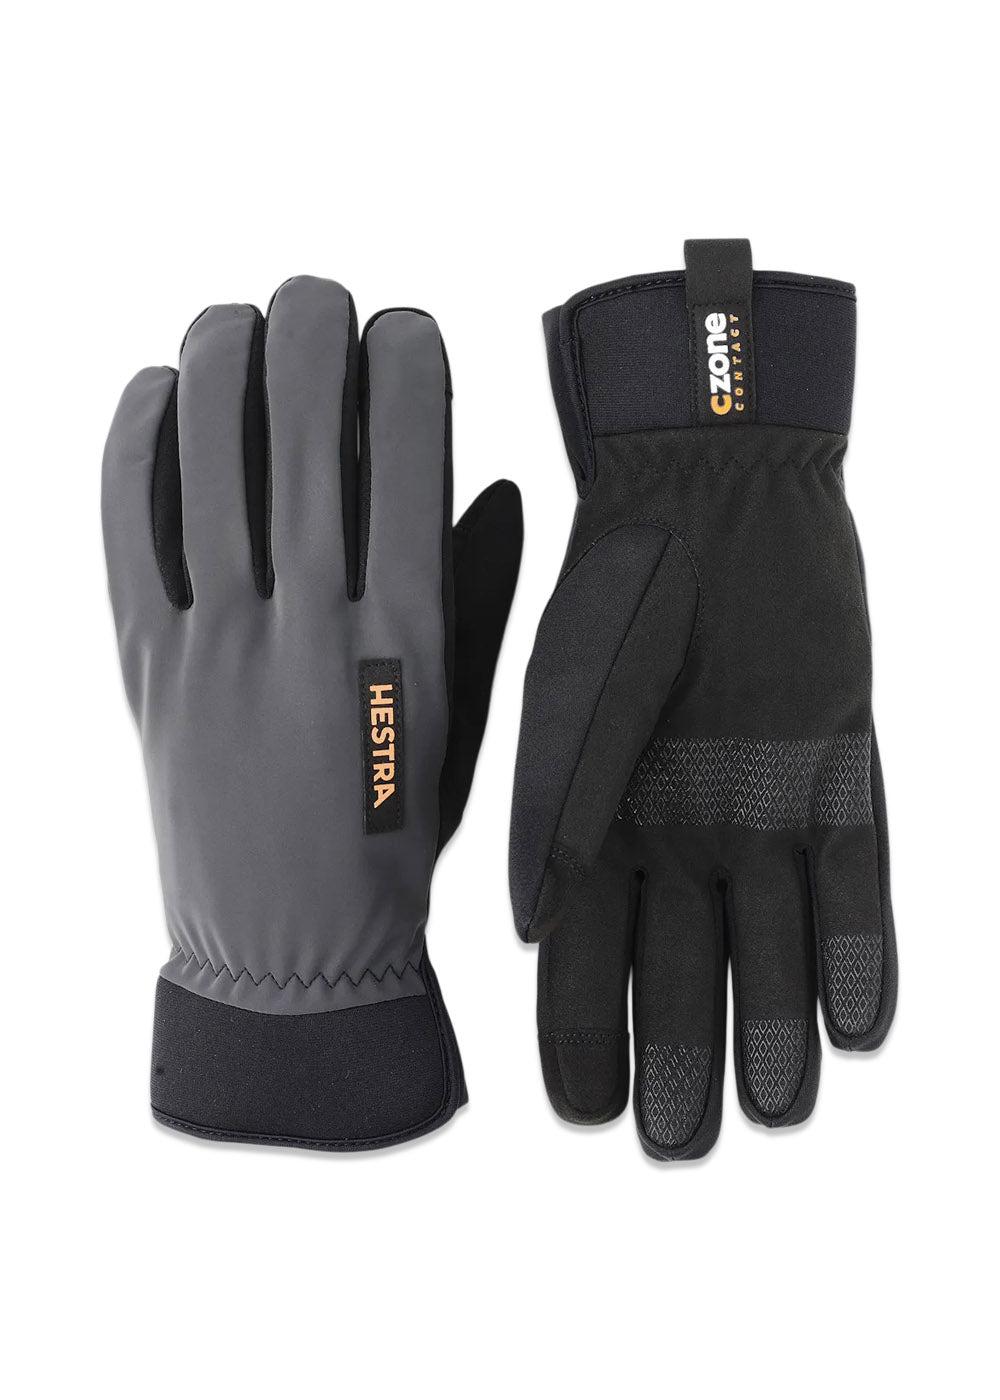 Czone Contact Glove - 5-finger - Dark Grey